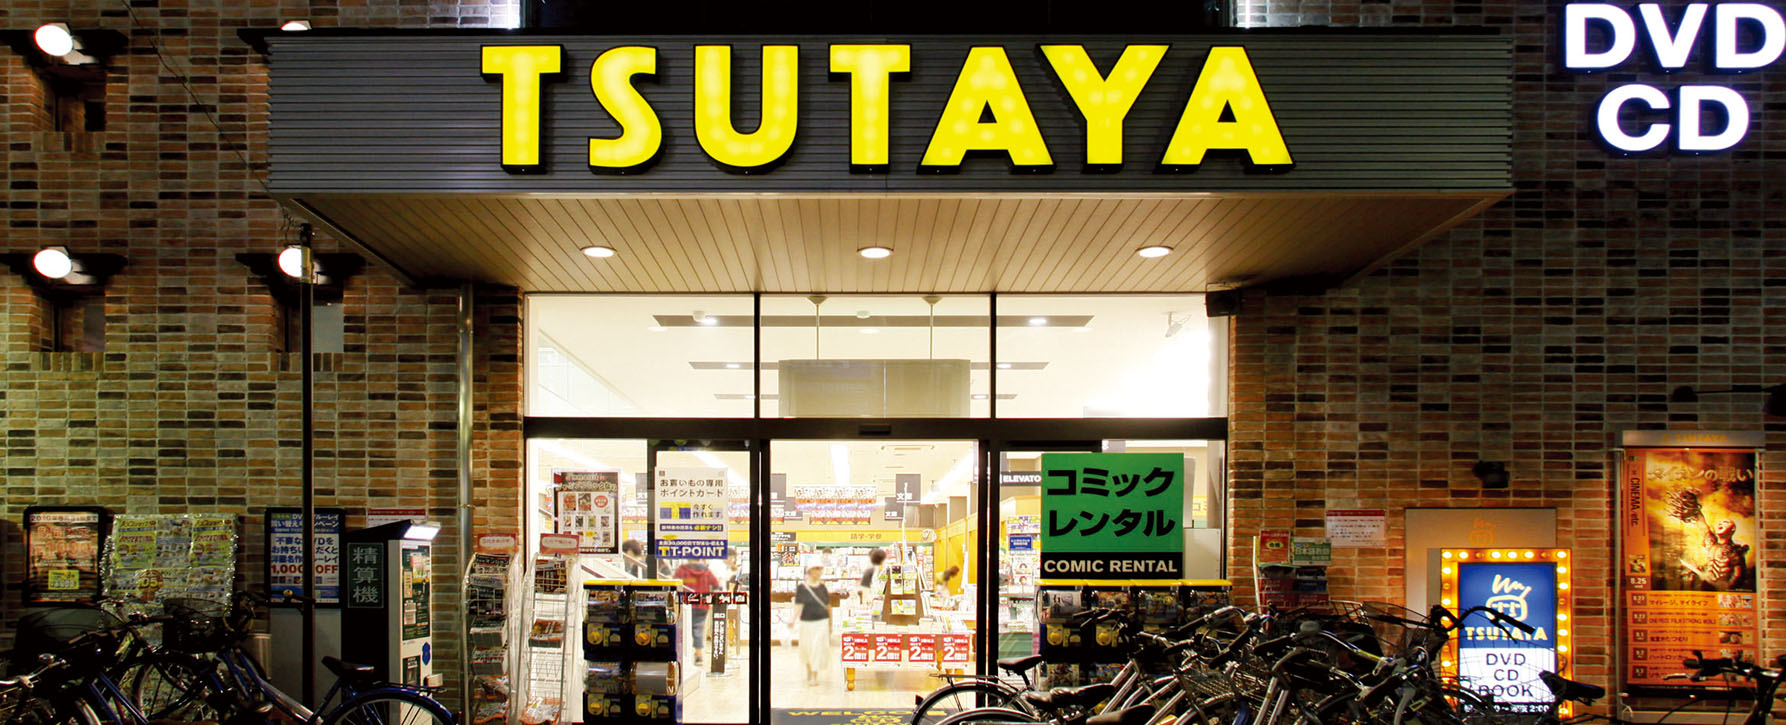 Tsutaya Cando事業 事業内容 株式会社都商事 神戸三宮中心に様々なビジネスにチャレンジしています